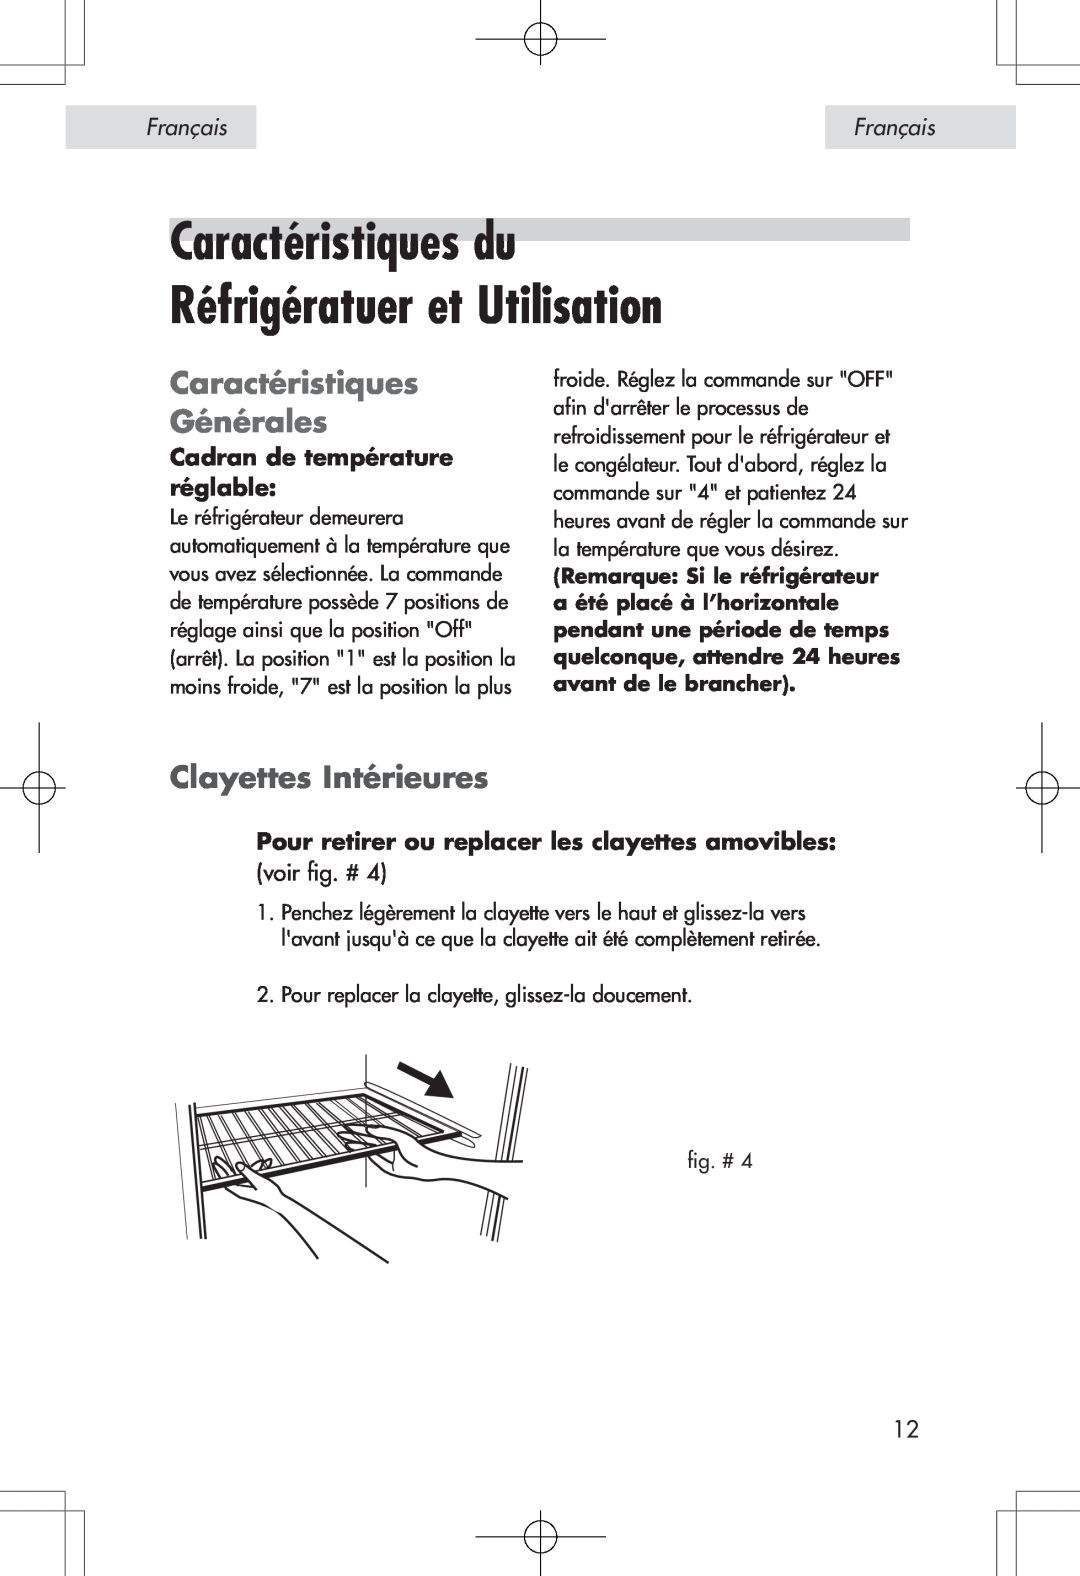 Haier HSP04WNA Caractéristiques du Réfrigératuer et Utilisation, Caractéristiques Générales, Clayettes Intérieures 